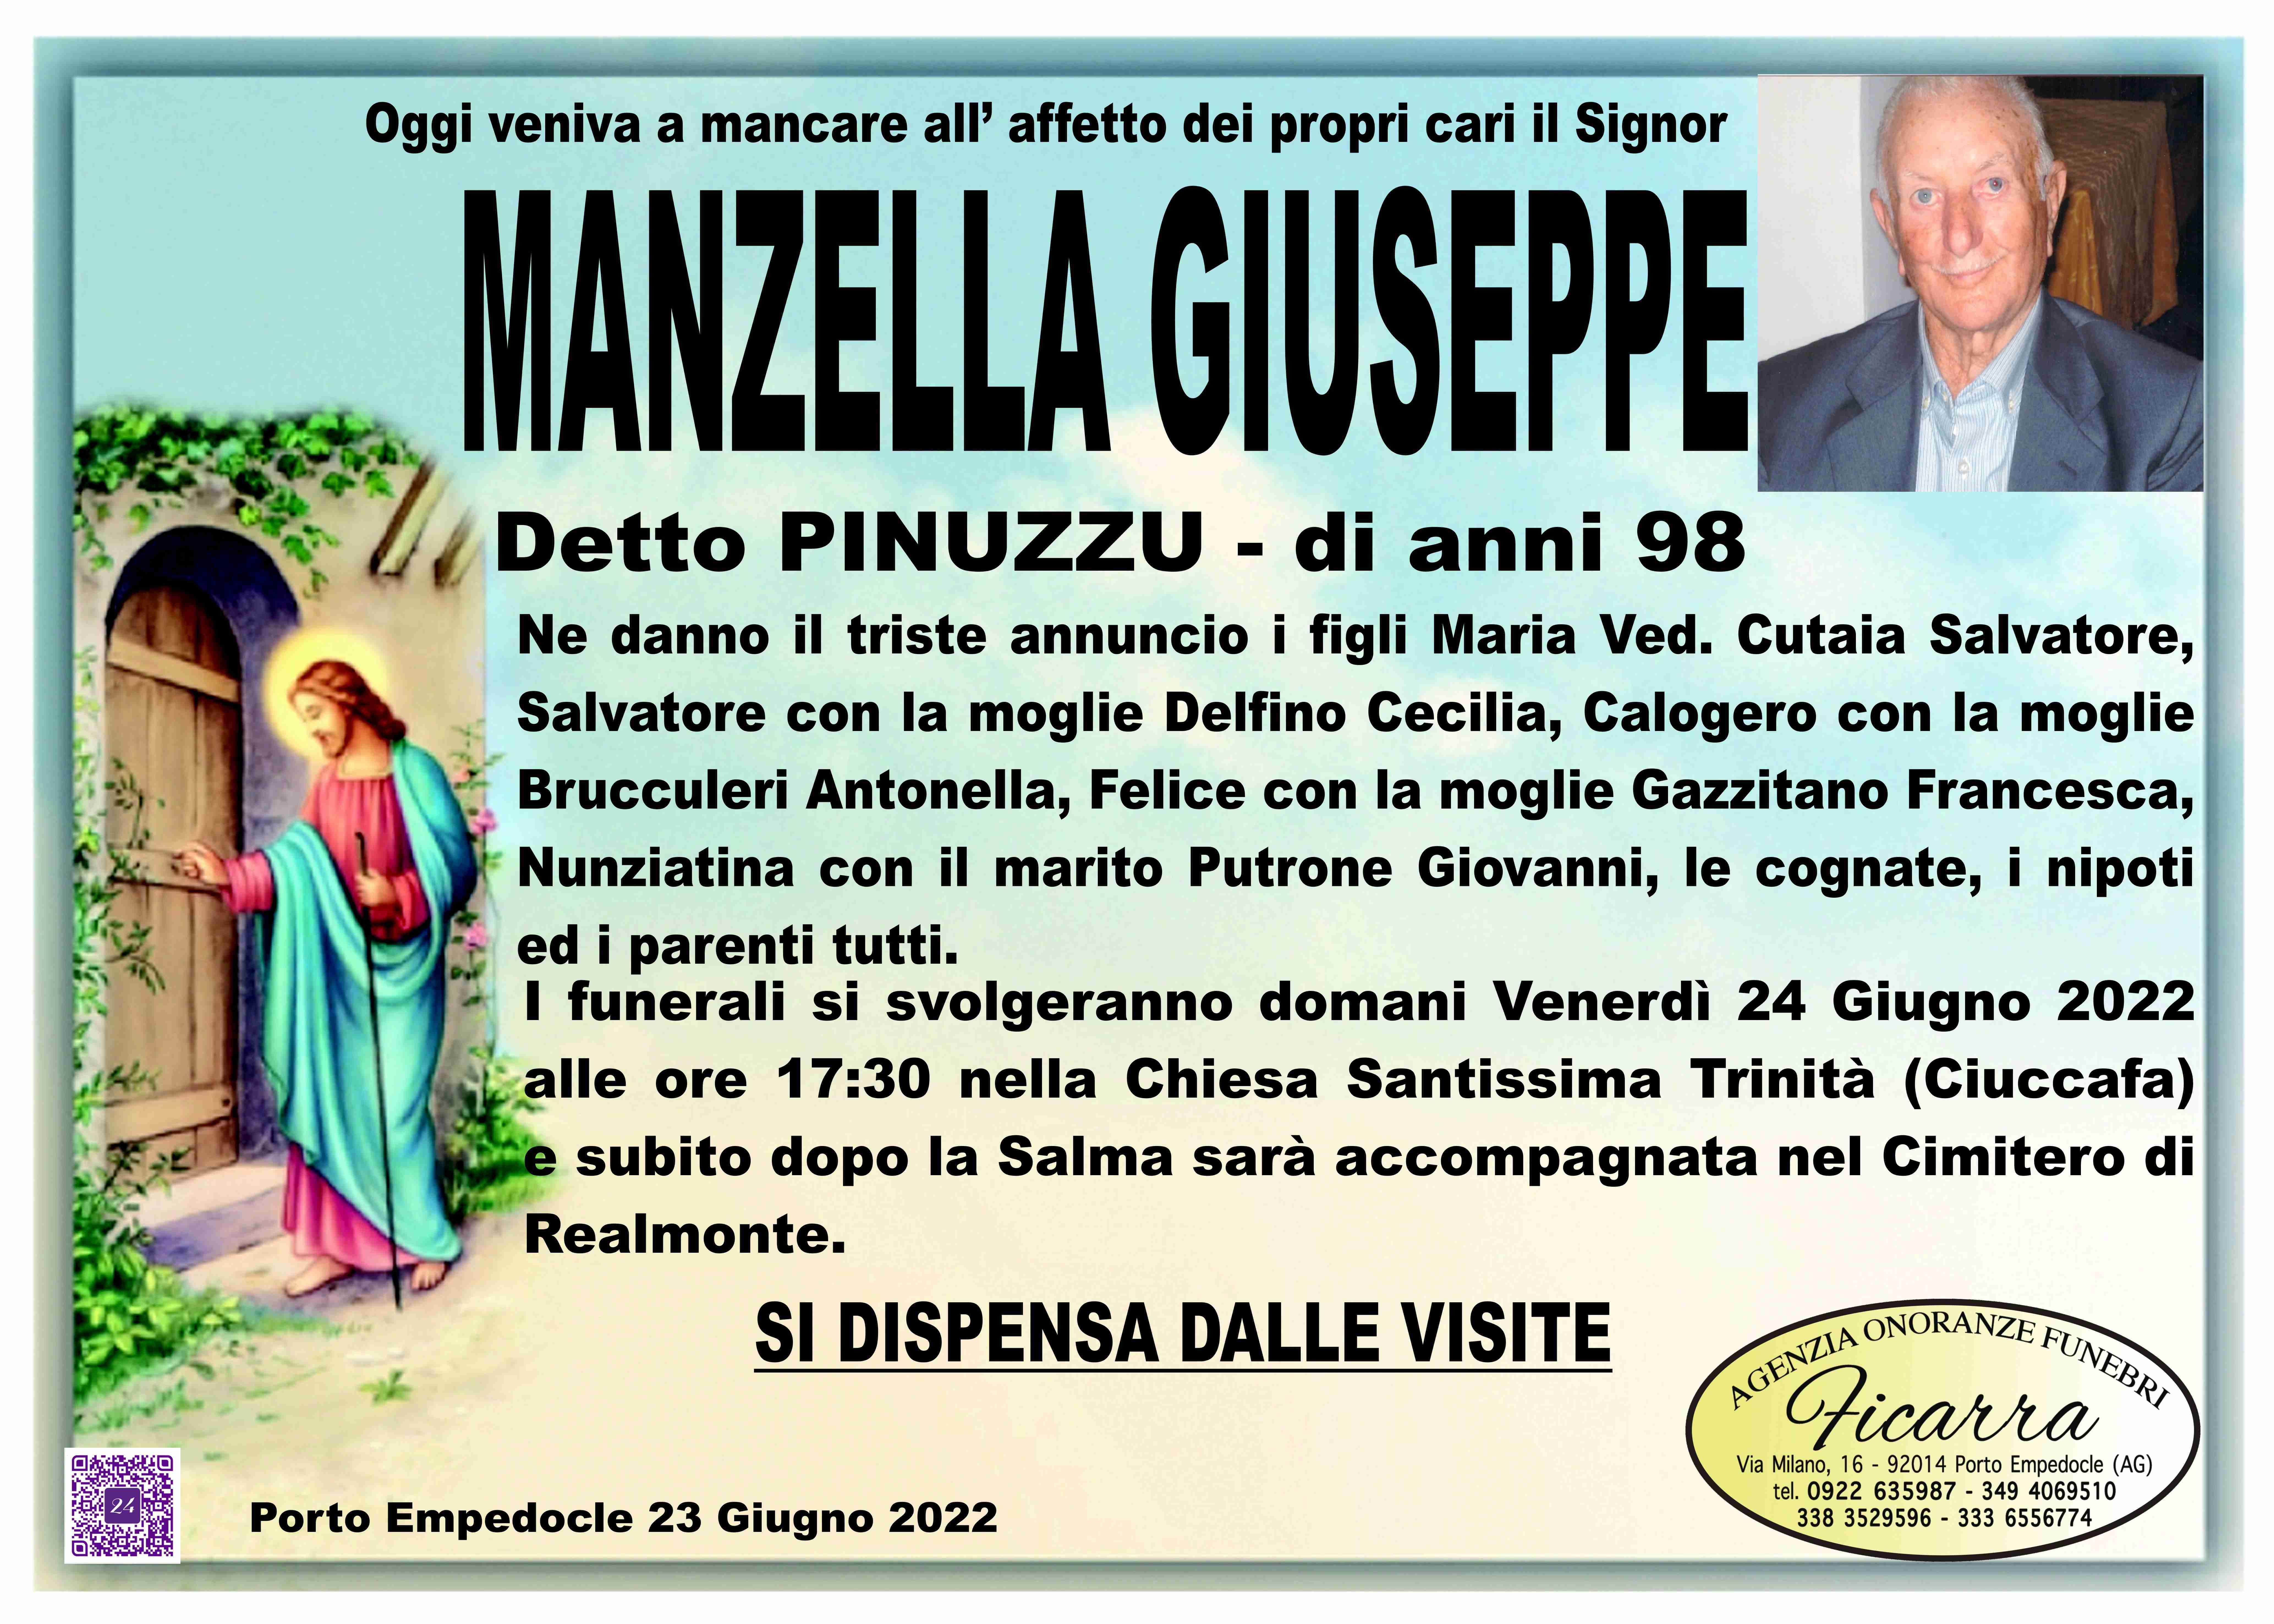 Giuseppe Manzella